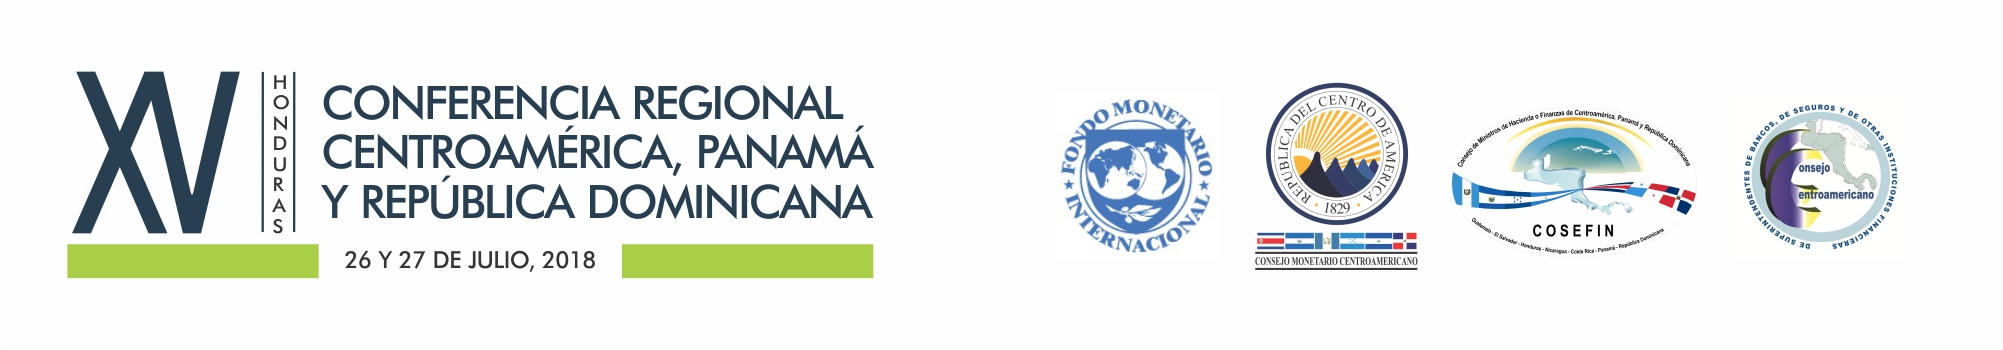 XV Conferencia Regional para Centroamérica, Panamá y la República Dominicana; Tegucigalpa, Honduras; 26-27 de julio de 2018